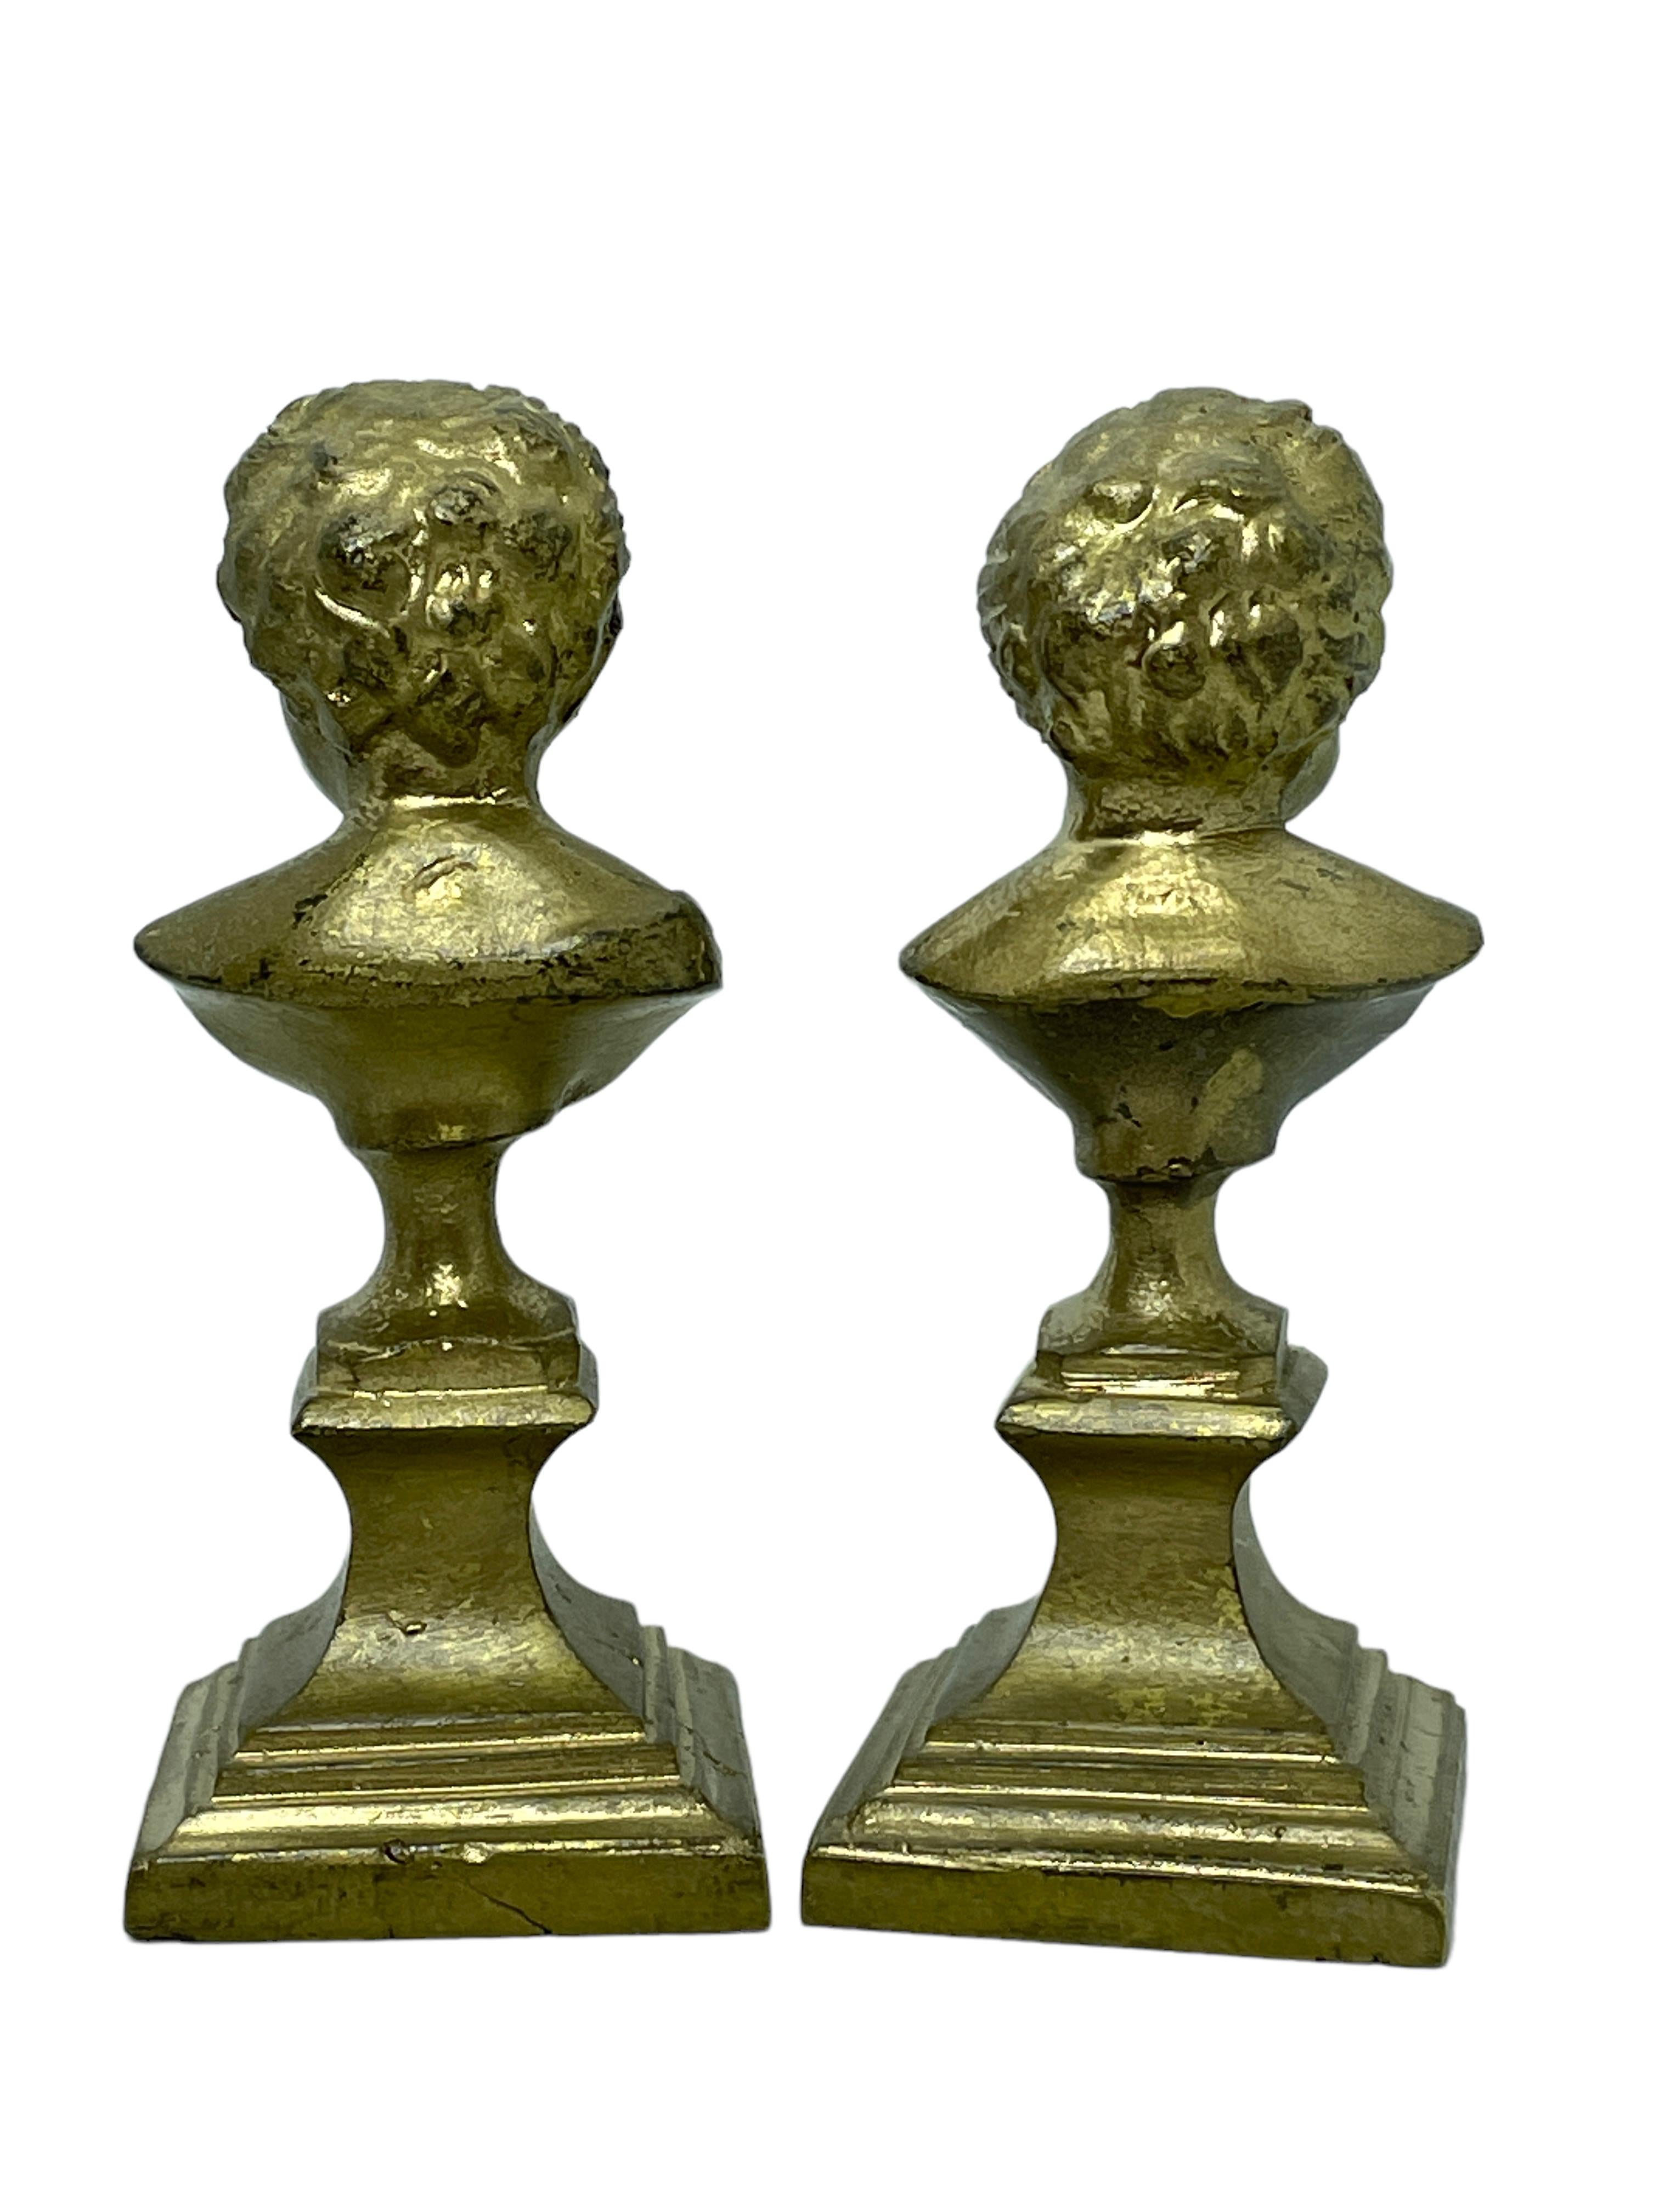 Art Nouveau Pair Cherub Decorative Bronze Metal Head Bust Statues Sculptures, Belgium, 1900s For Sale